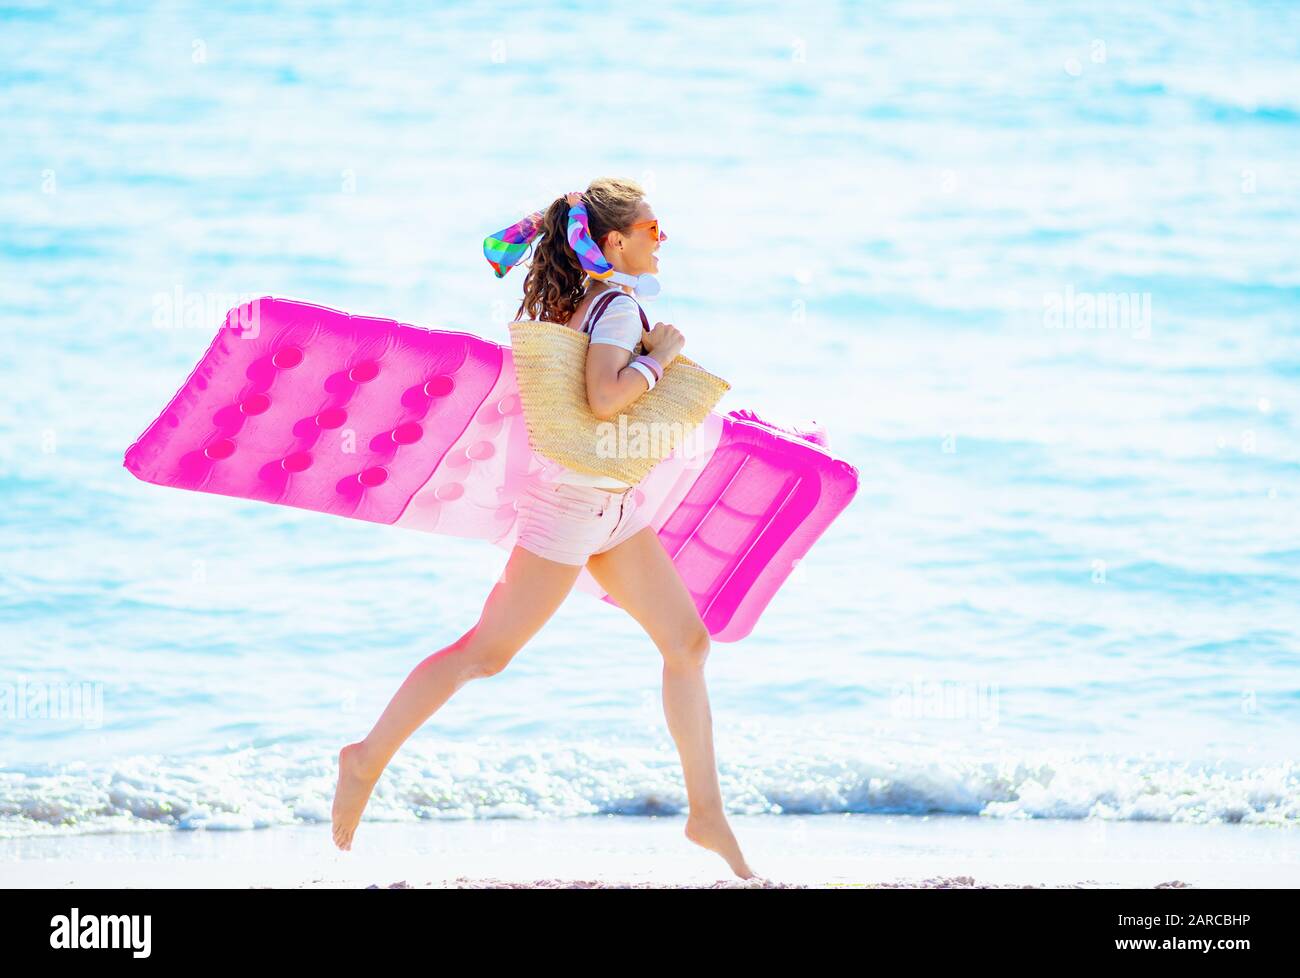 Fröhliche junge Frau in weißem T-Shirt und pinkfarbenen Shorts mit Strandabschnitt auf der Seakoast, die aufblasbare Matratze hält und läuft. Stockfoto